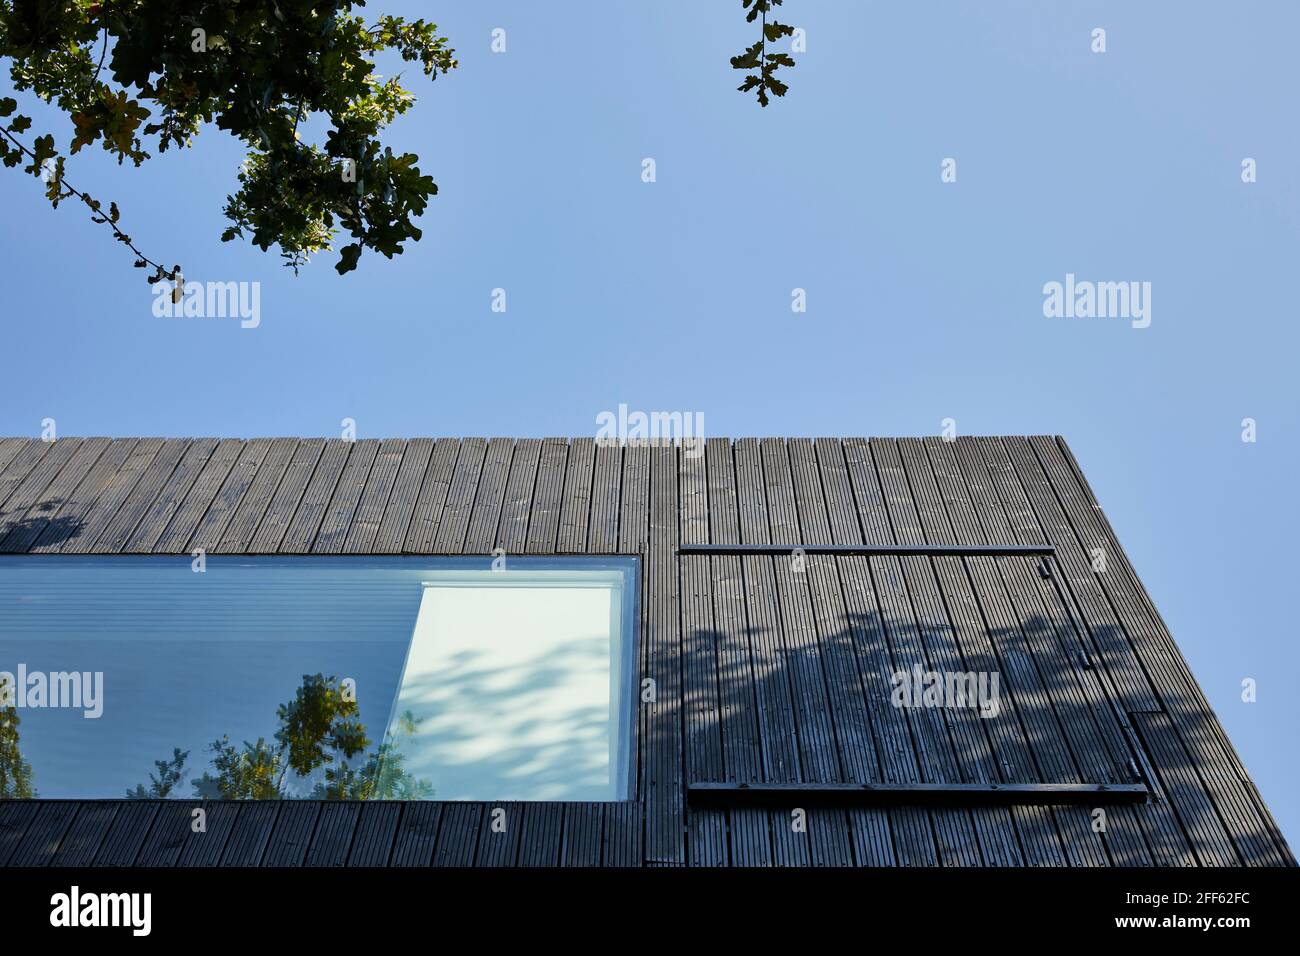 Exterior of house. Ed's Shed 2020, London, United Kingdom. Architect: Adjaye Associates , 2007. Stock Photo